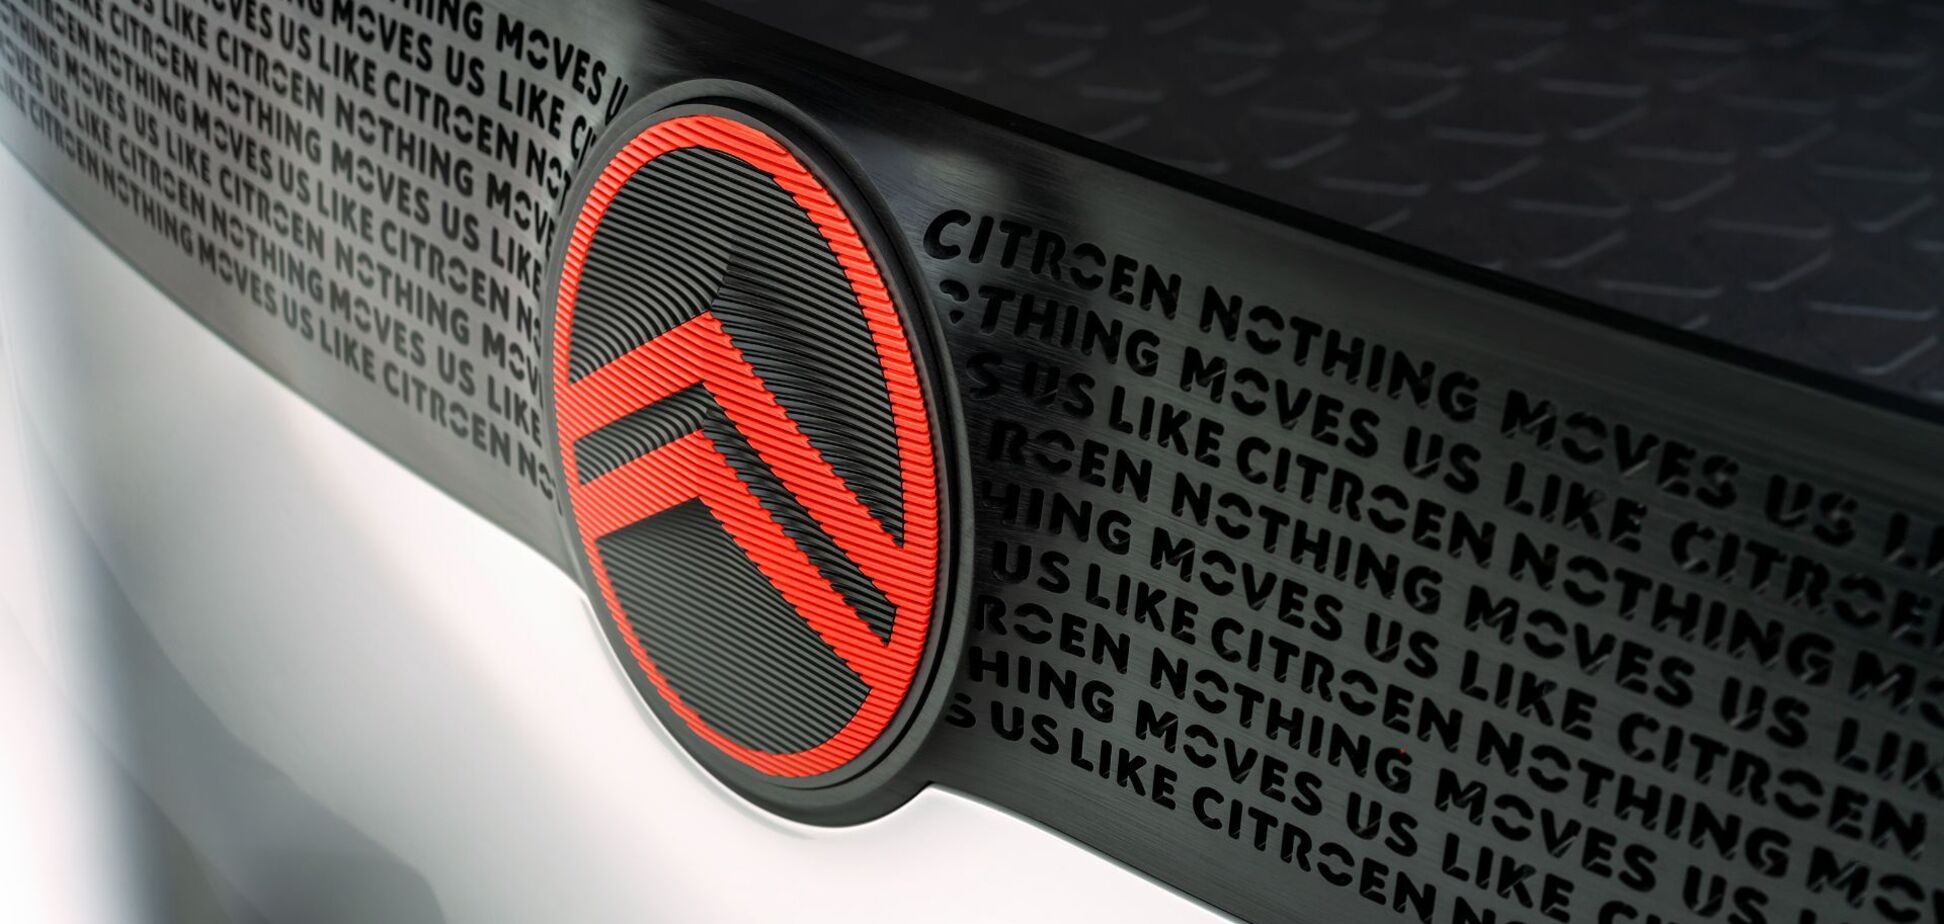 Citroen показав нові логотип та тизери концепту